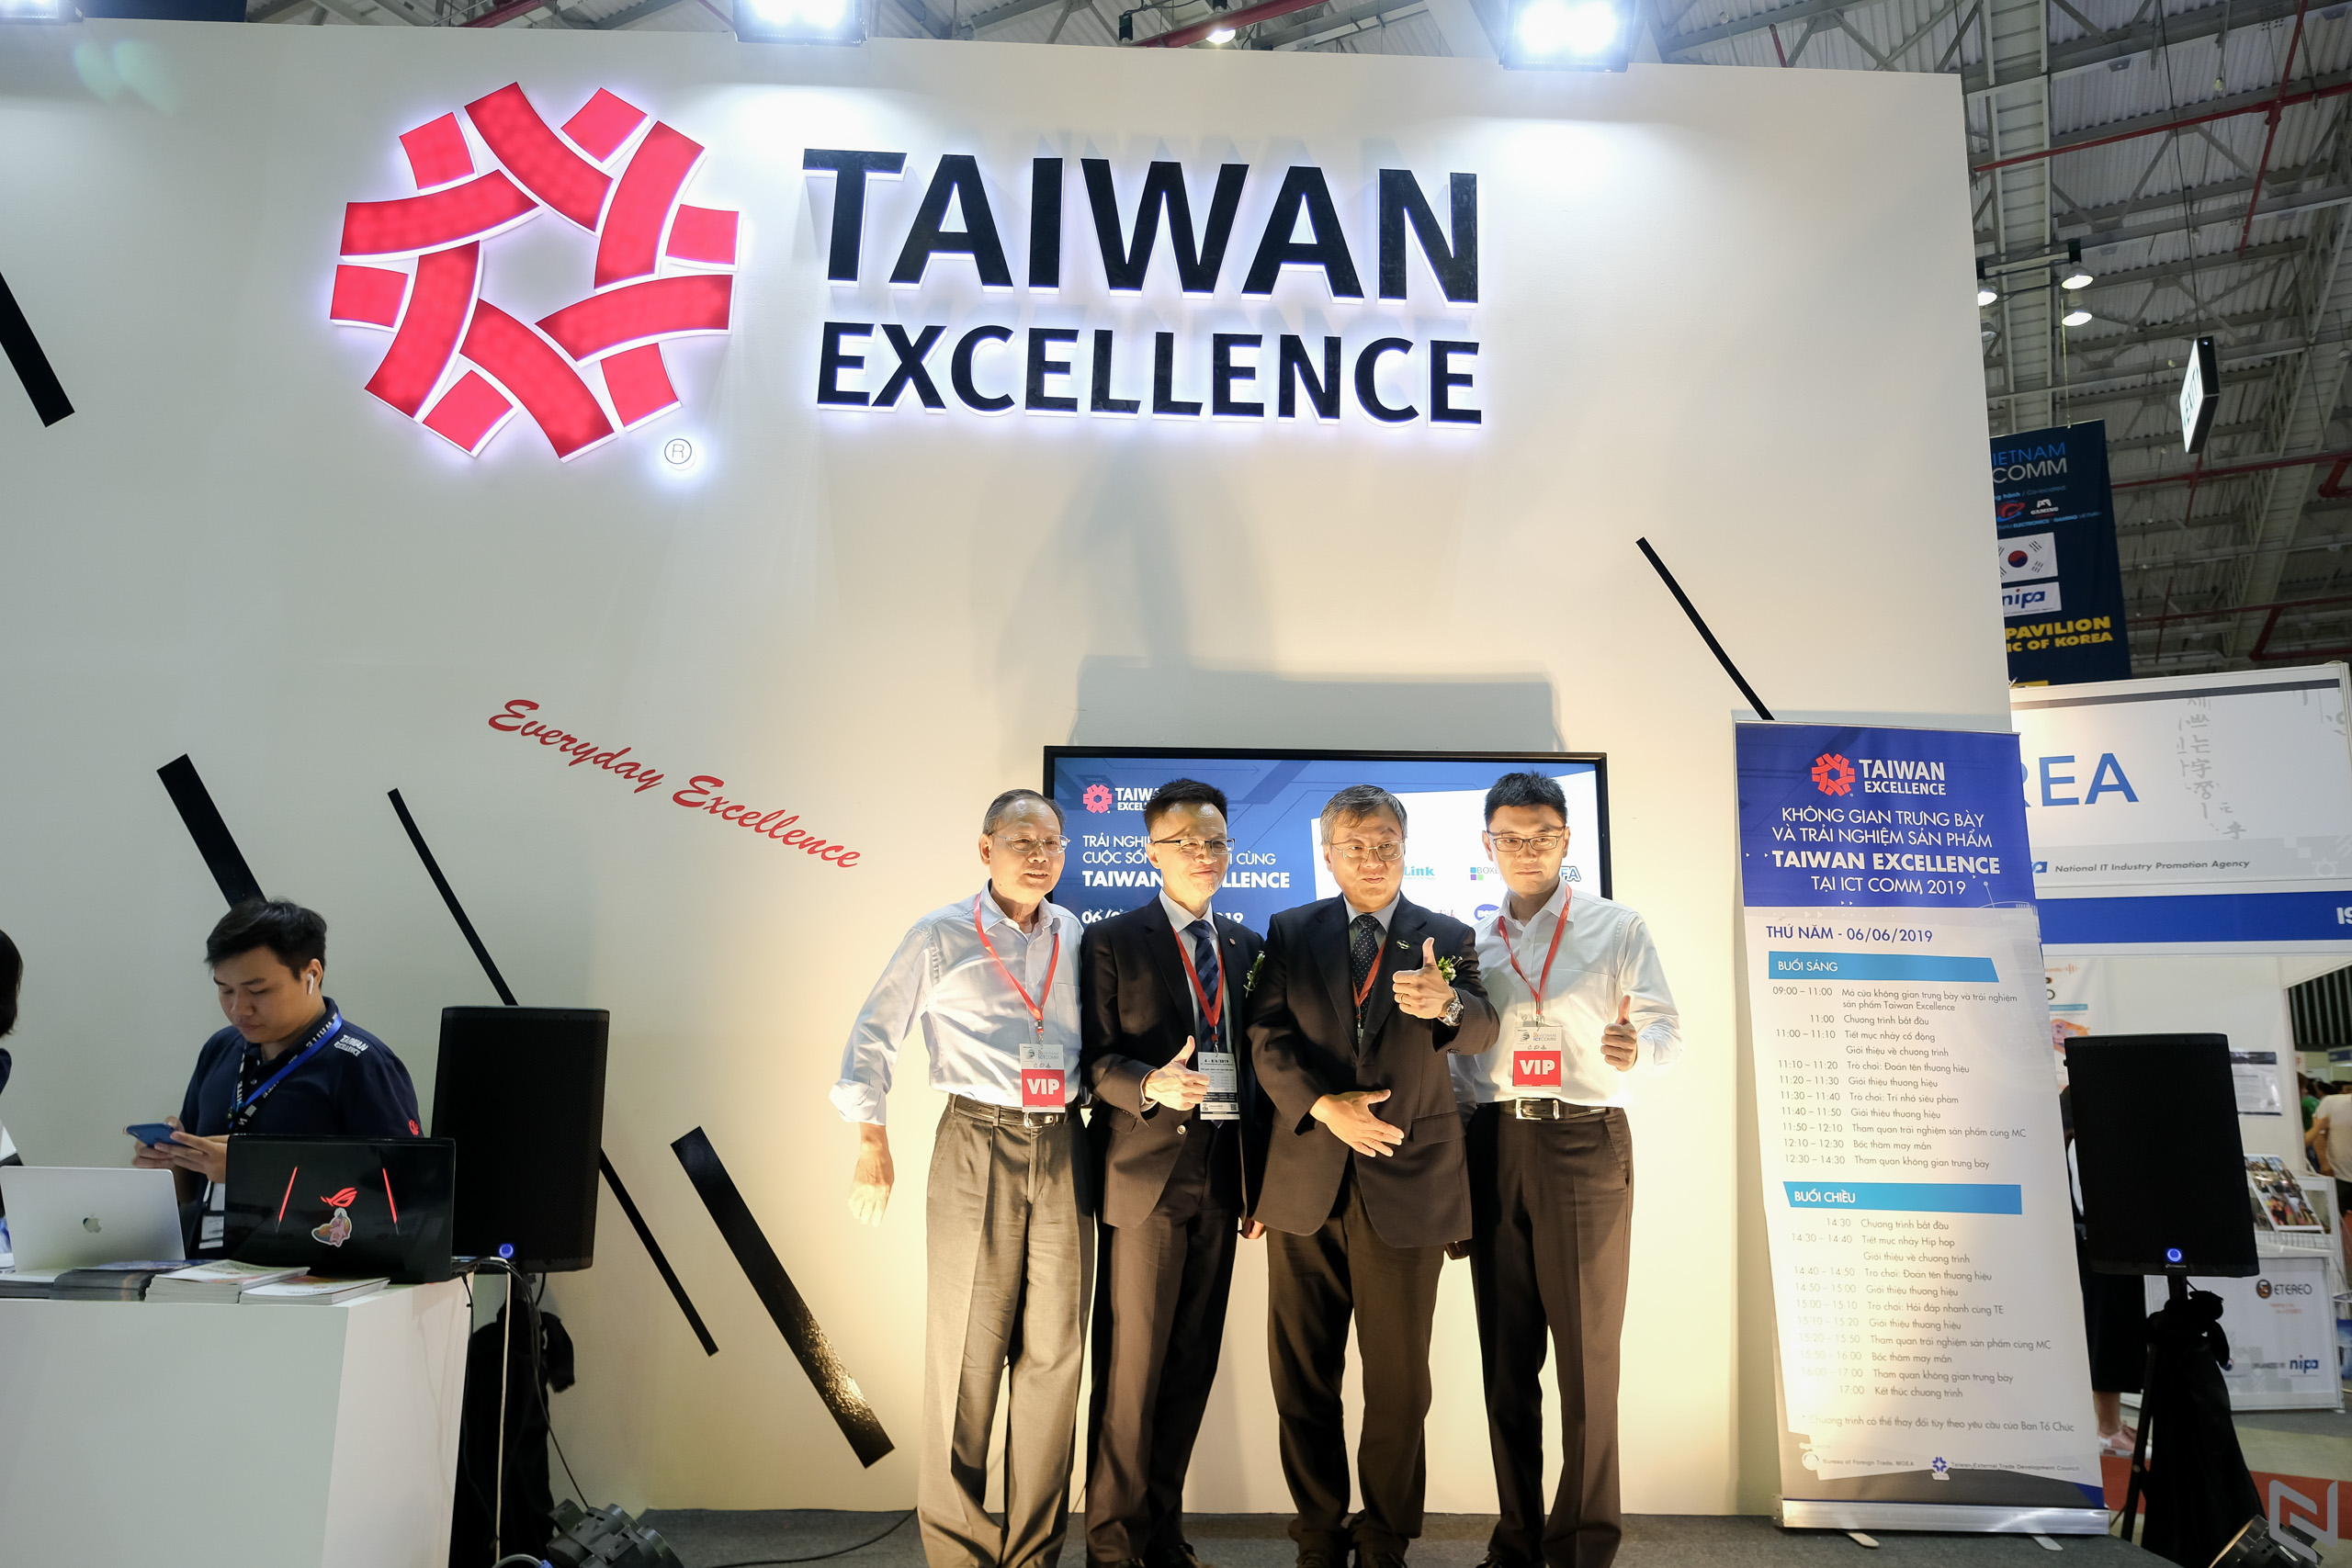 Taiwan Excellence mang dấu ấn công nghệ đột phá đến triển lãm ICT COMM 2019